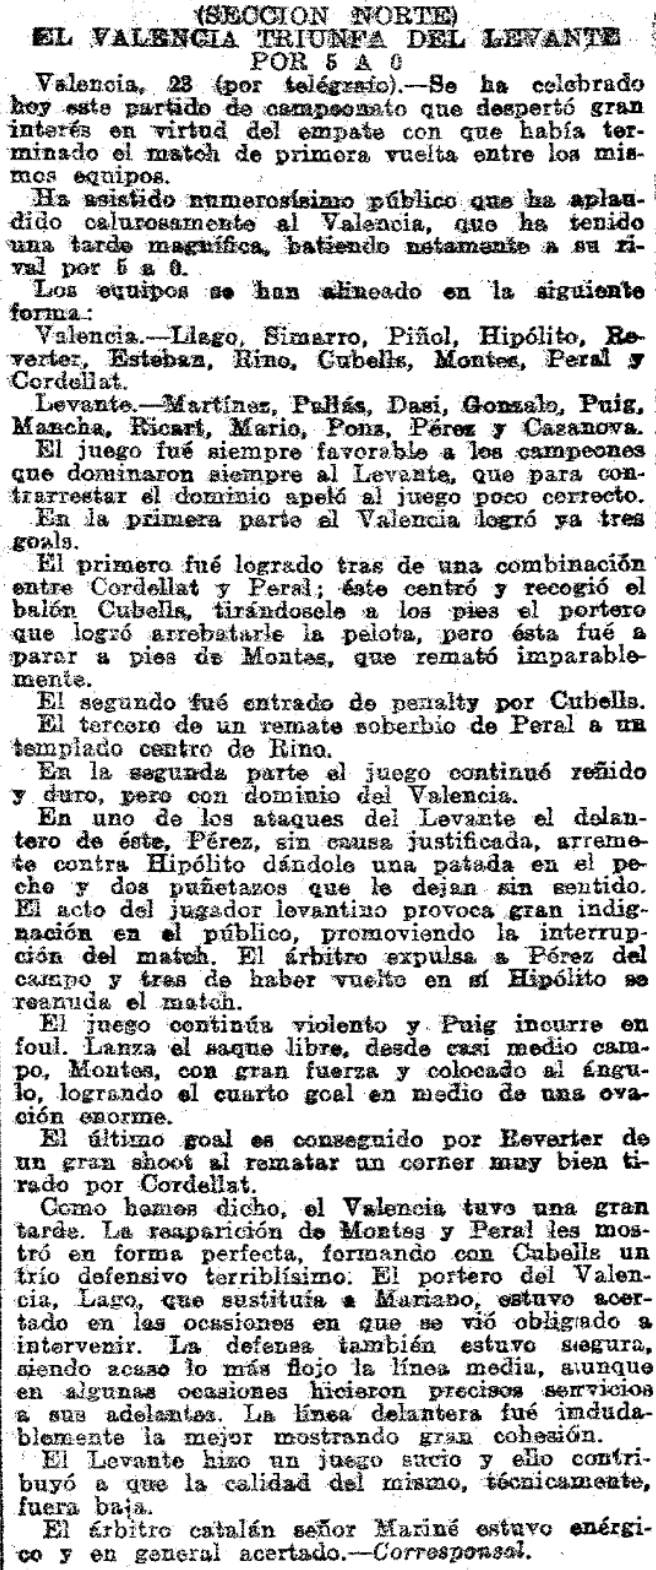 1923.12.23 (23 декабря 1923), Валенсия - Леванте, 5-0.png